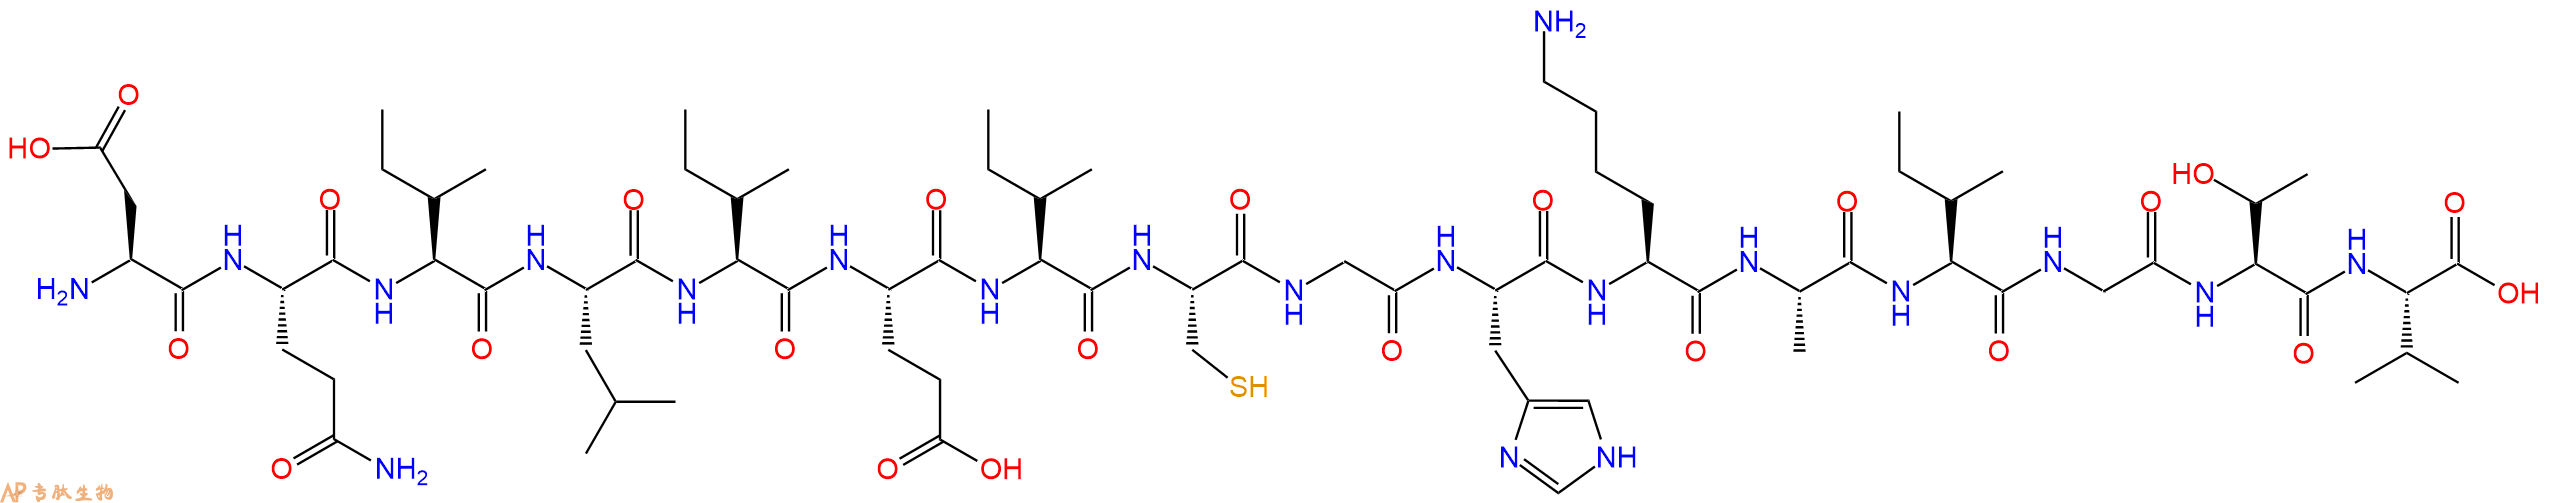 专肽生物产品ASP-Gln-Ile-Leu-Ile-Glu-Ile-Cys-Gly-His-Lys-Ala-Il